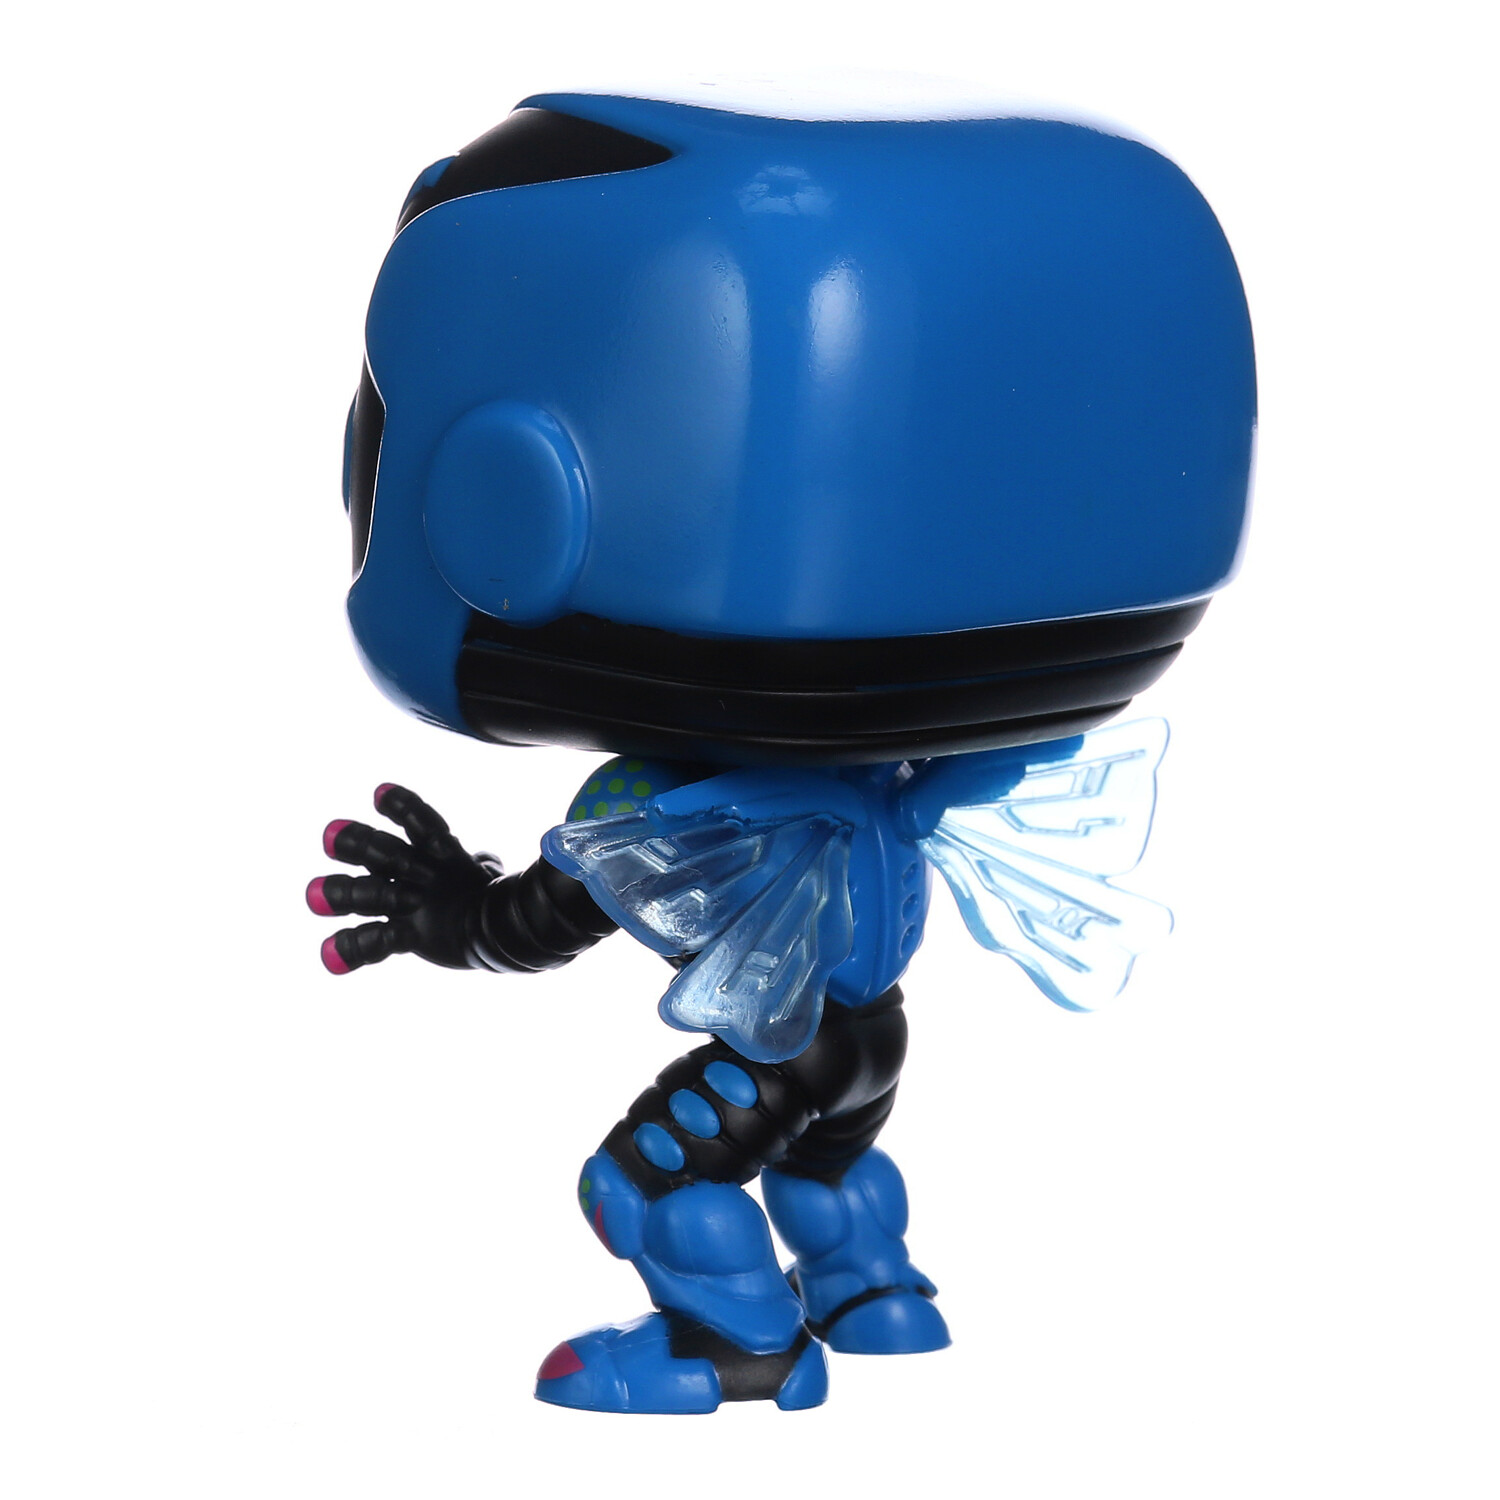 Buy Pop! Blue Beetle at Funko.